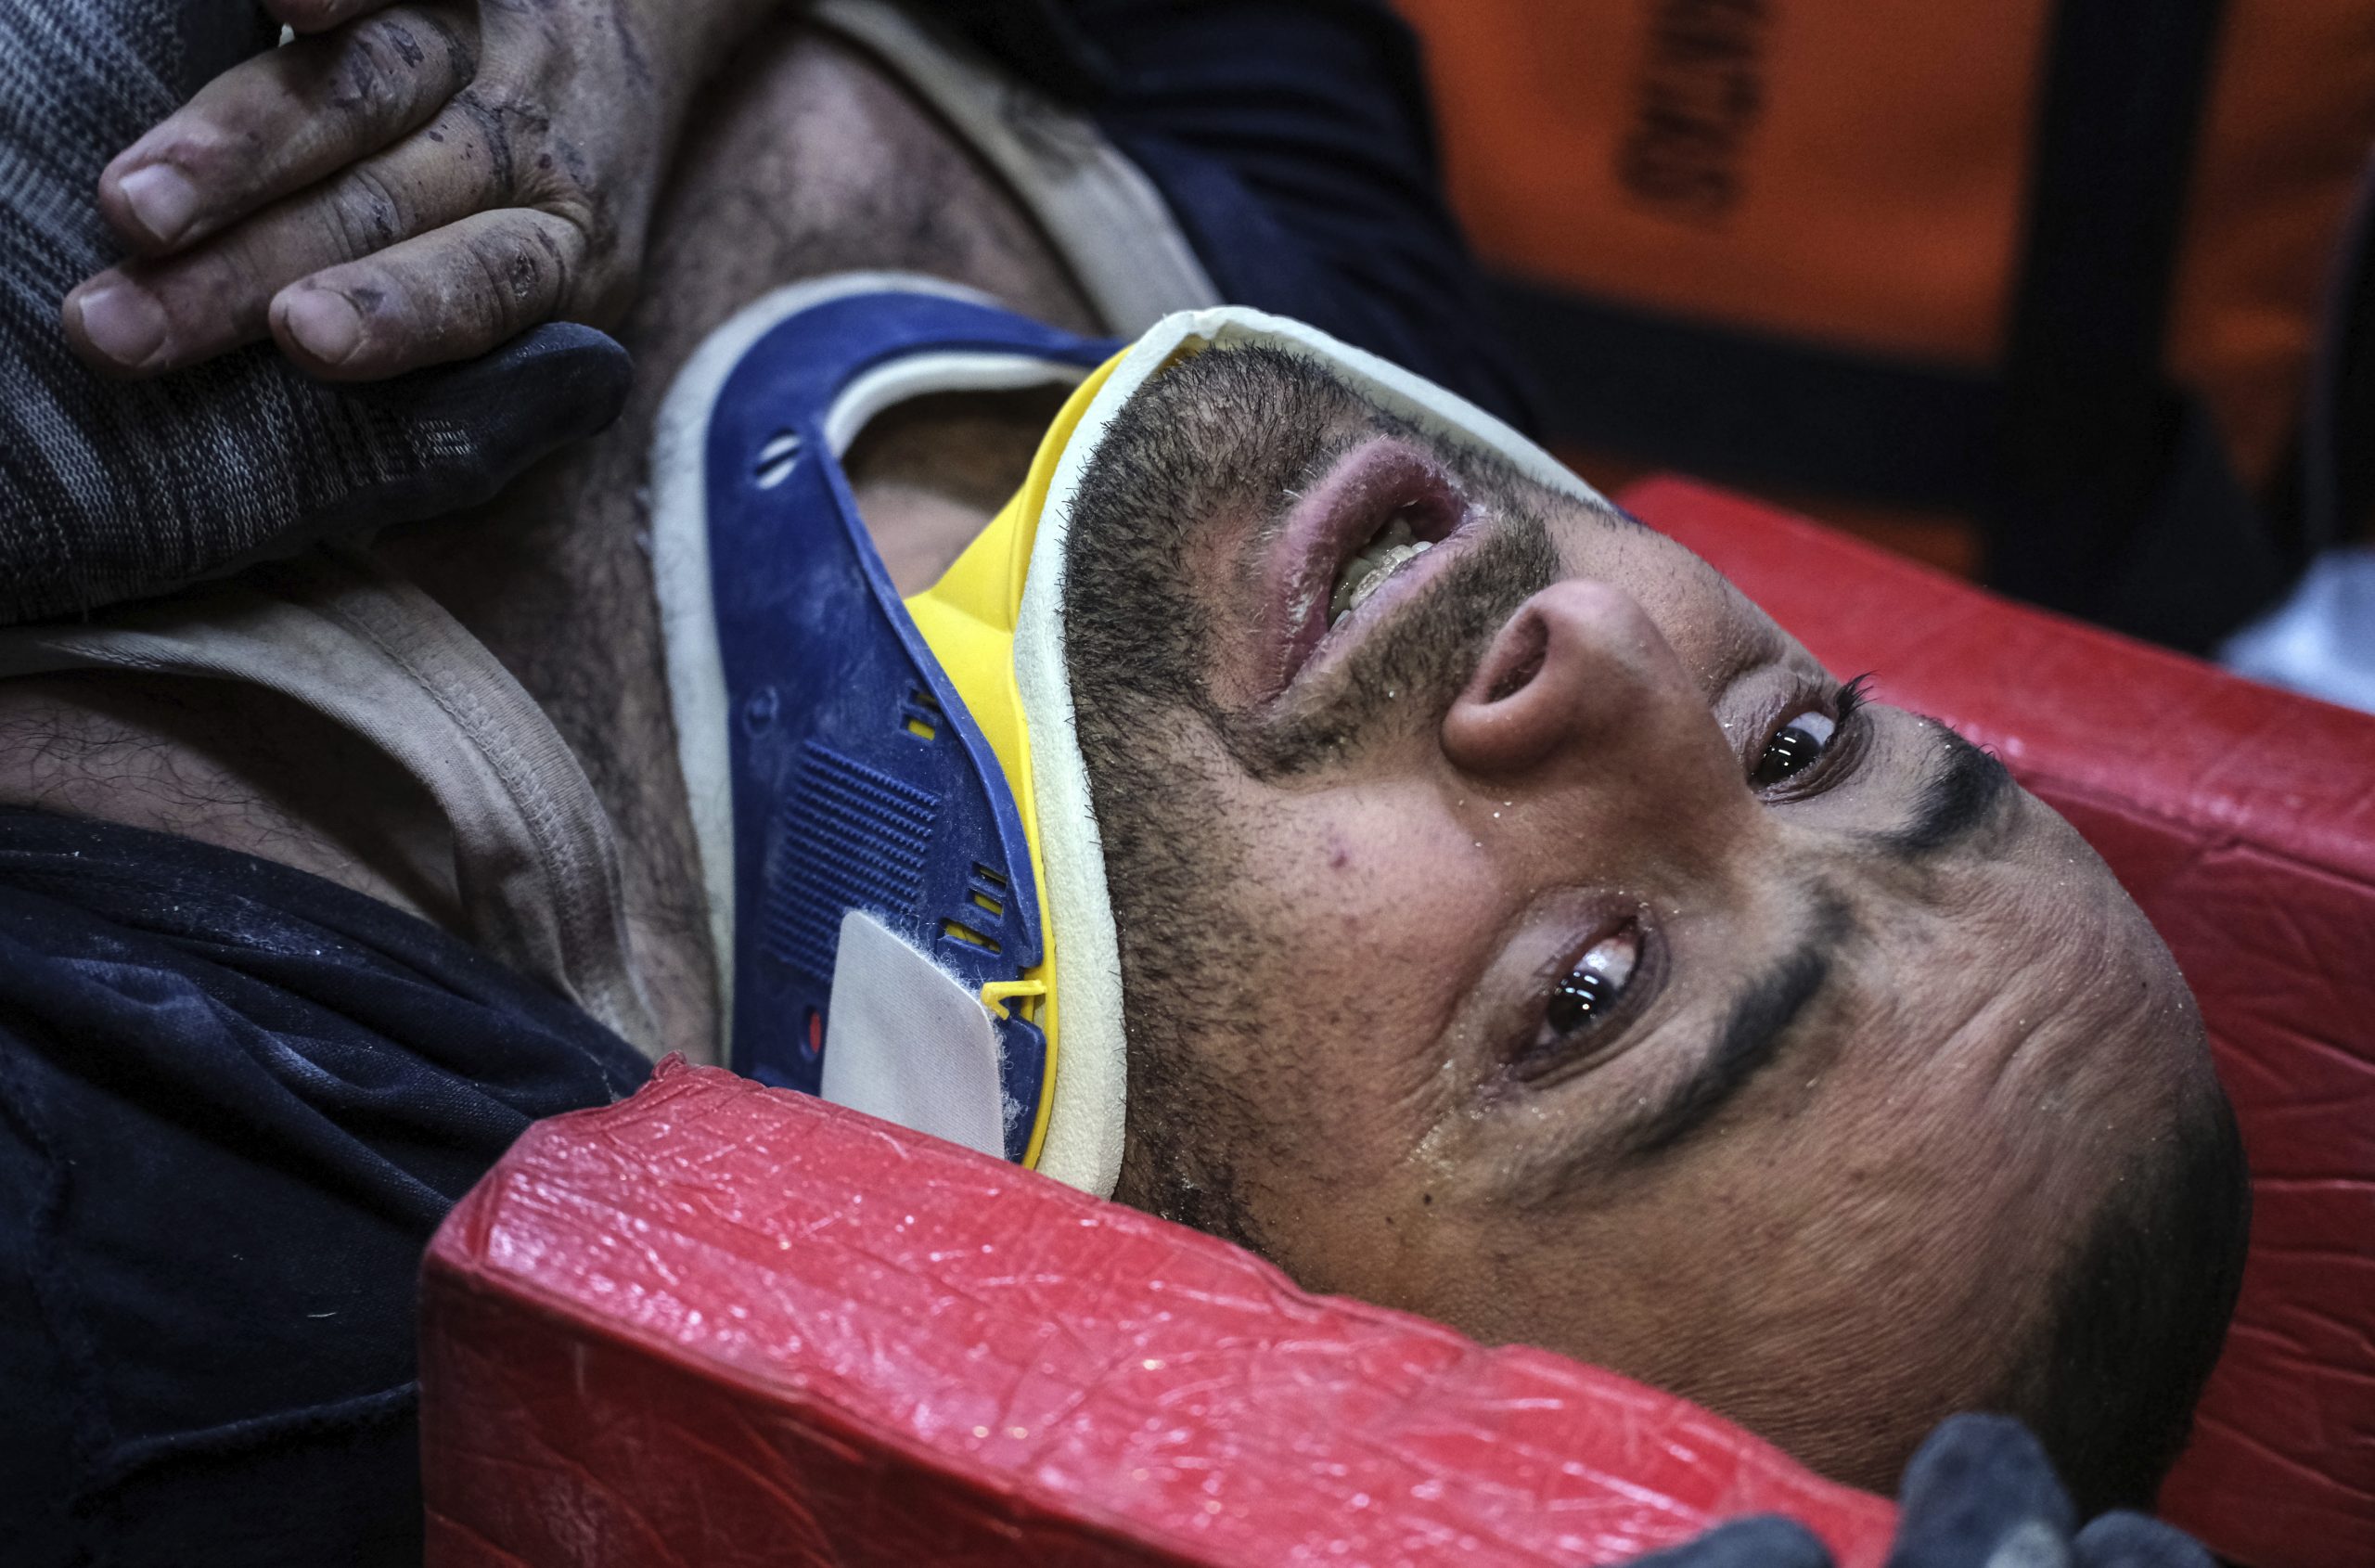 搜救人员与时间赛跑 土耳其地震灾区又有121人获救